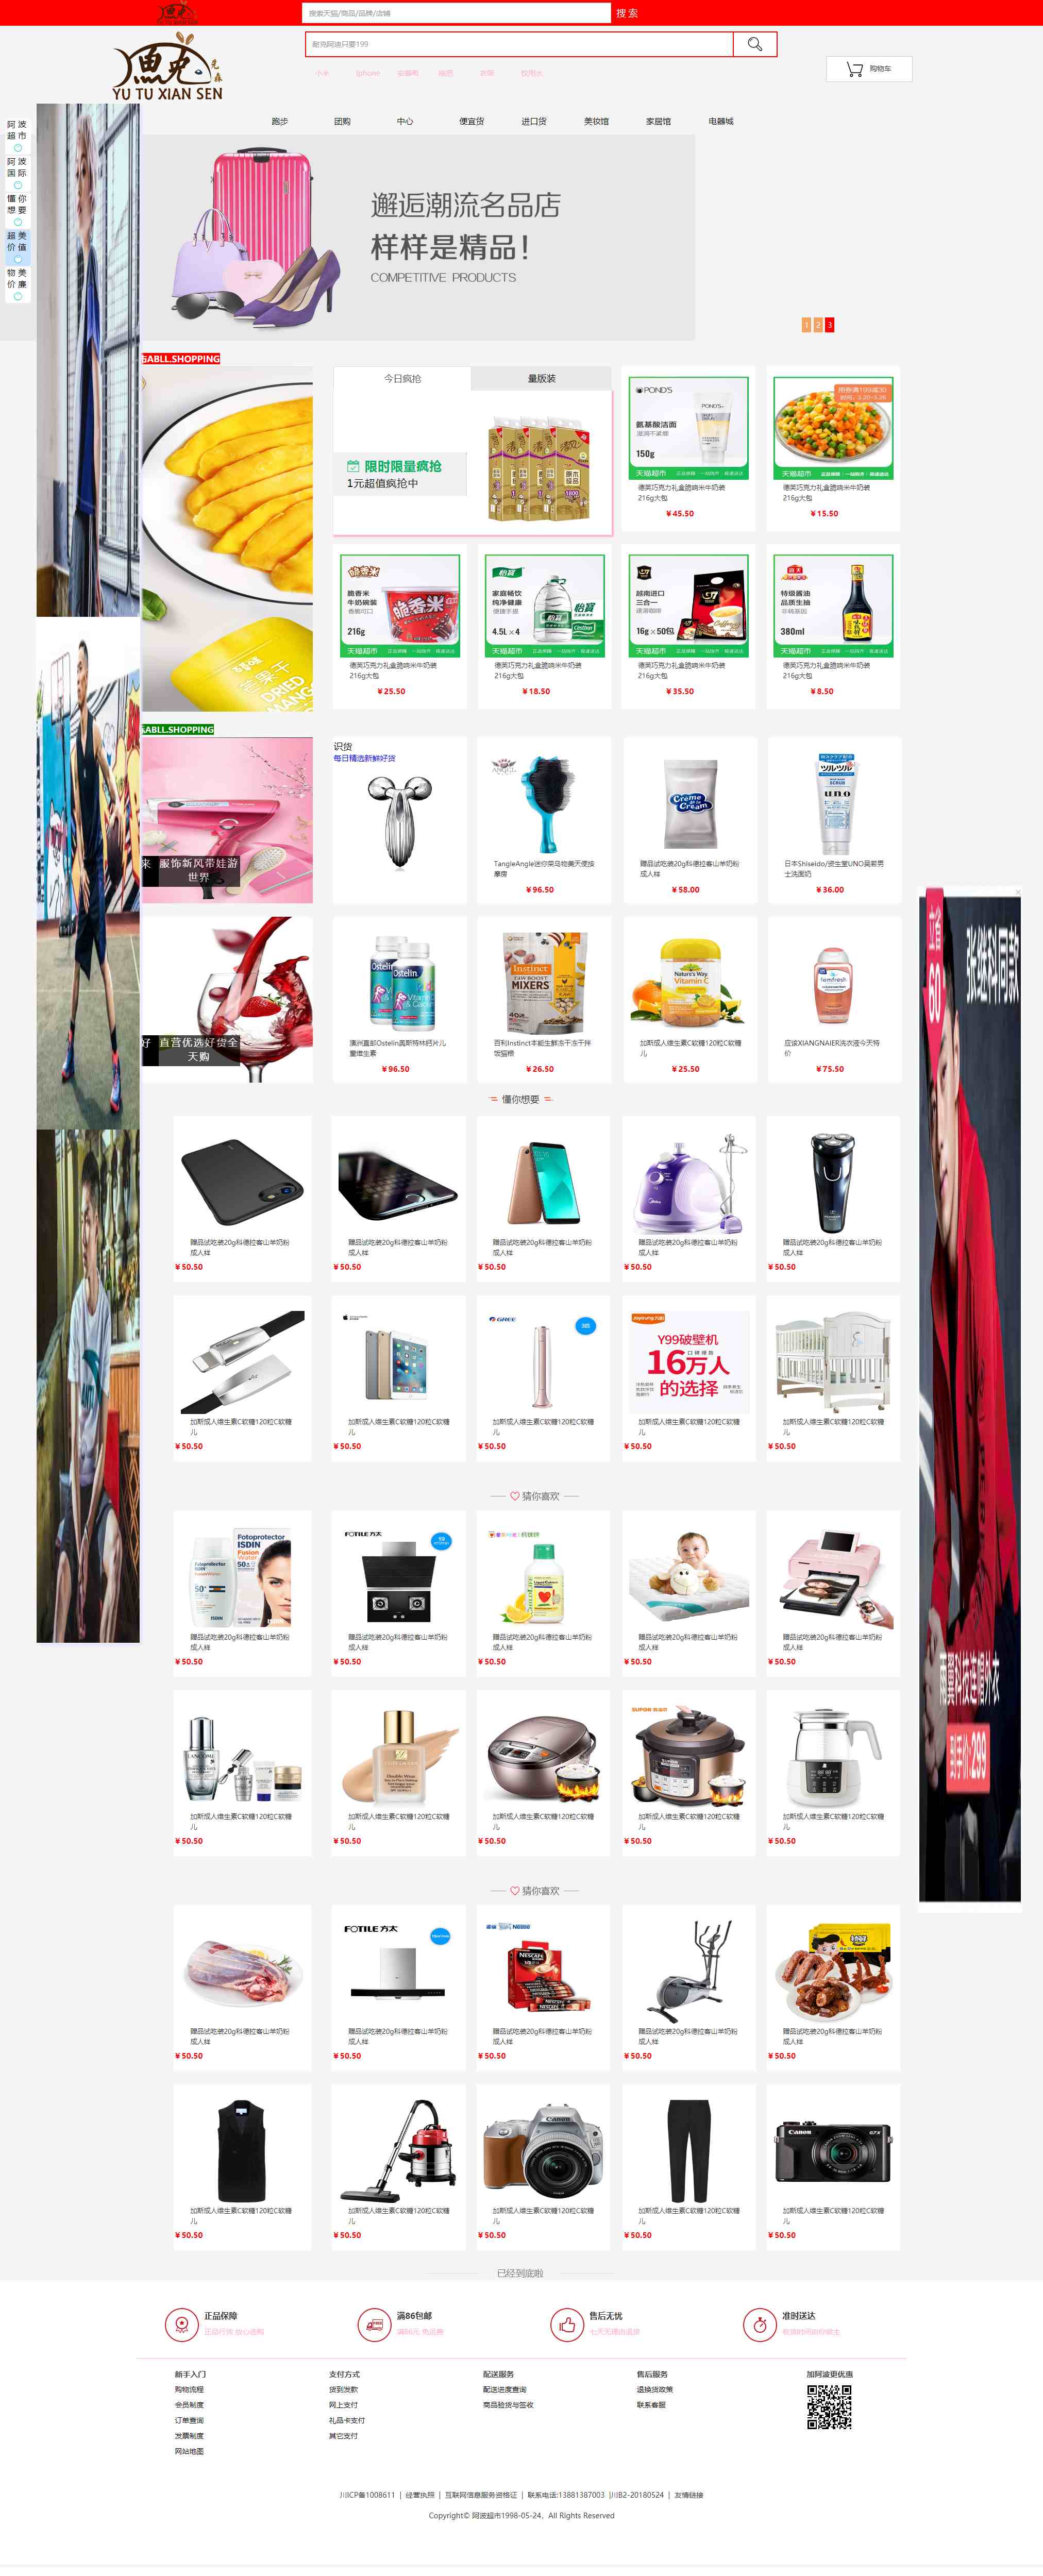 红色简洁风格的生活购物类商城整站网站源码下载